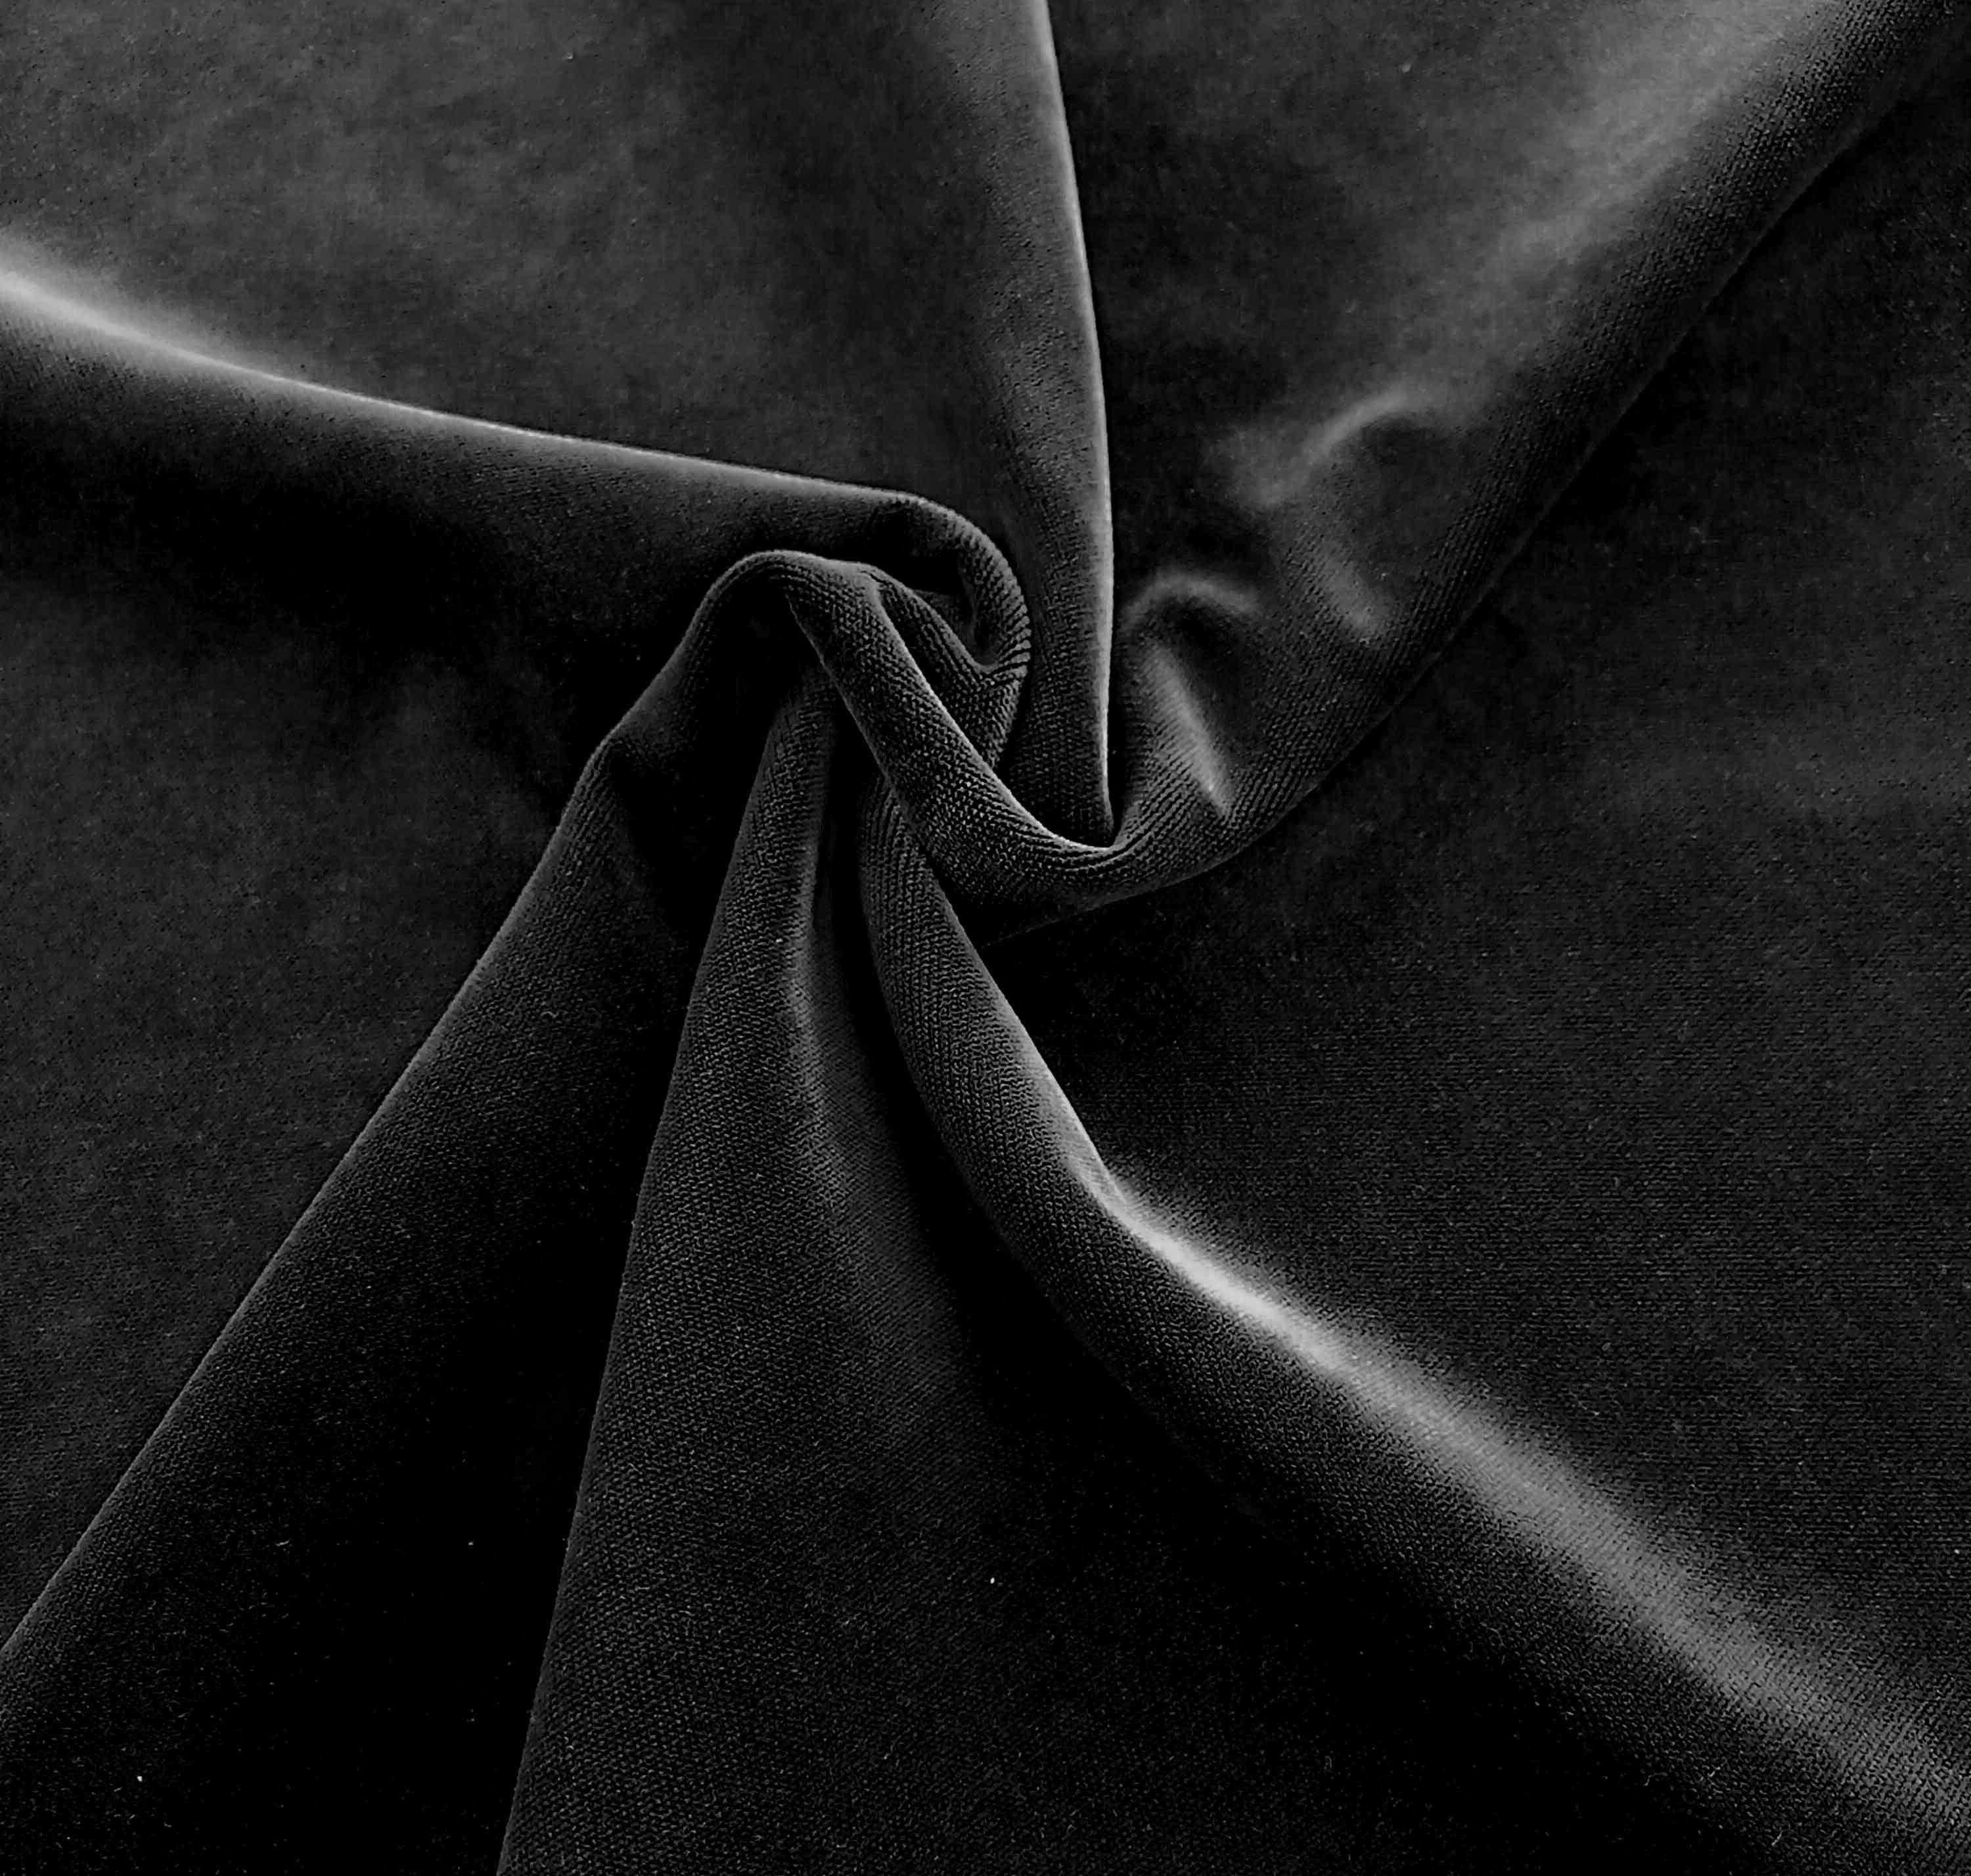 Black Velvet upholstery fabric, black Velvet chair fabric, velvet sofa  fabric, luxury velvet fabric, cotton velvet fabric